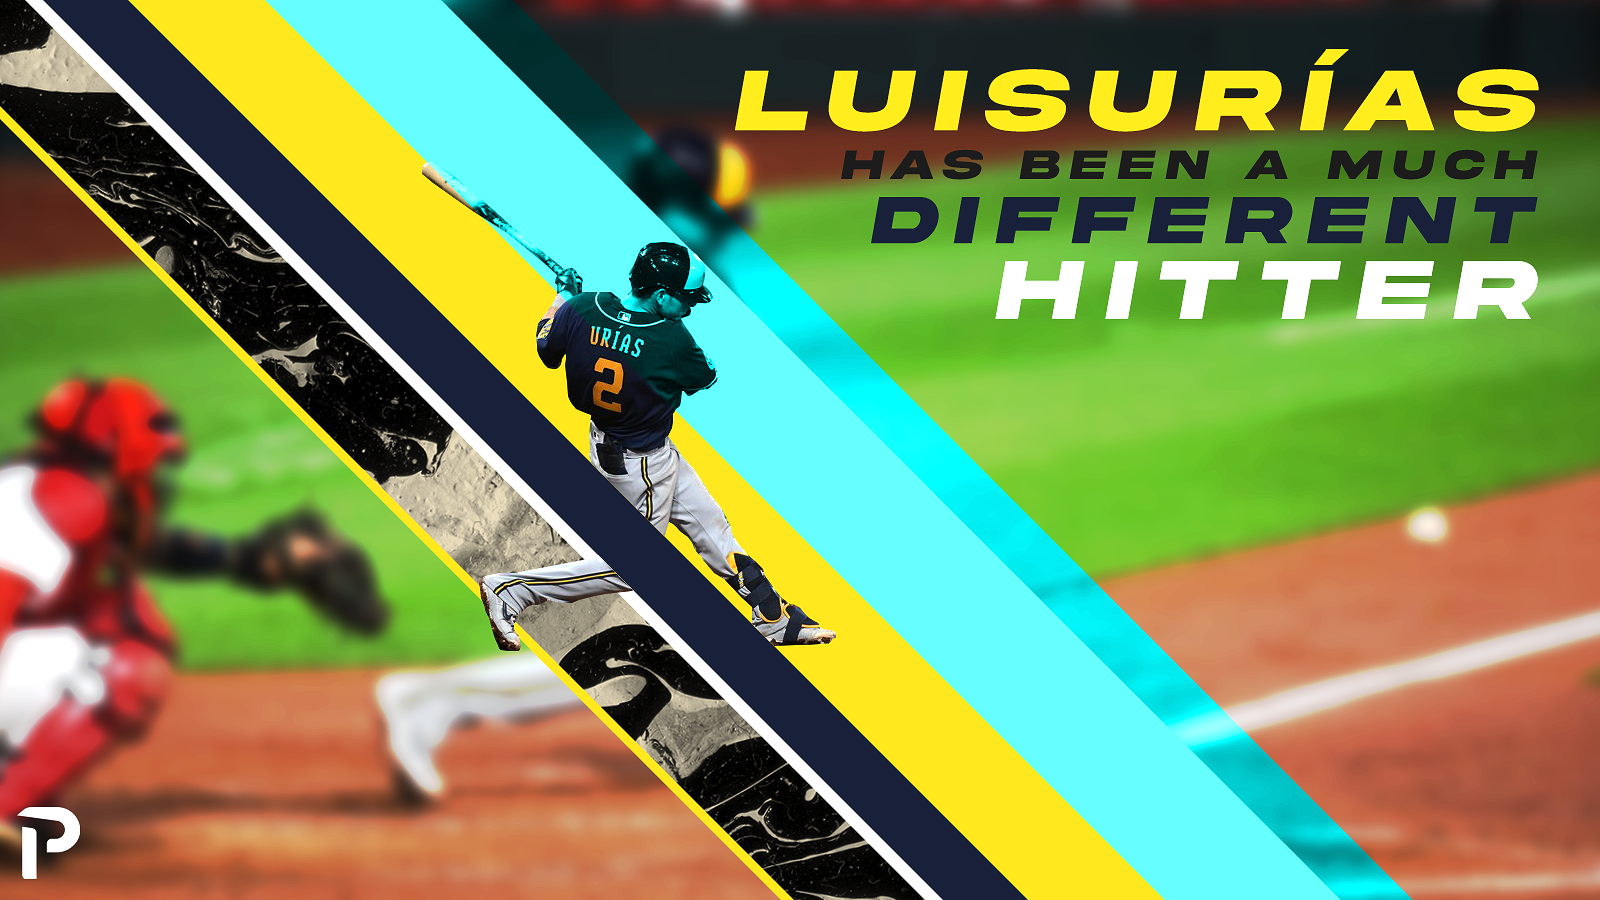 Luis Urías Has Been a Much Different Hitter